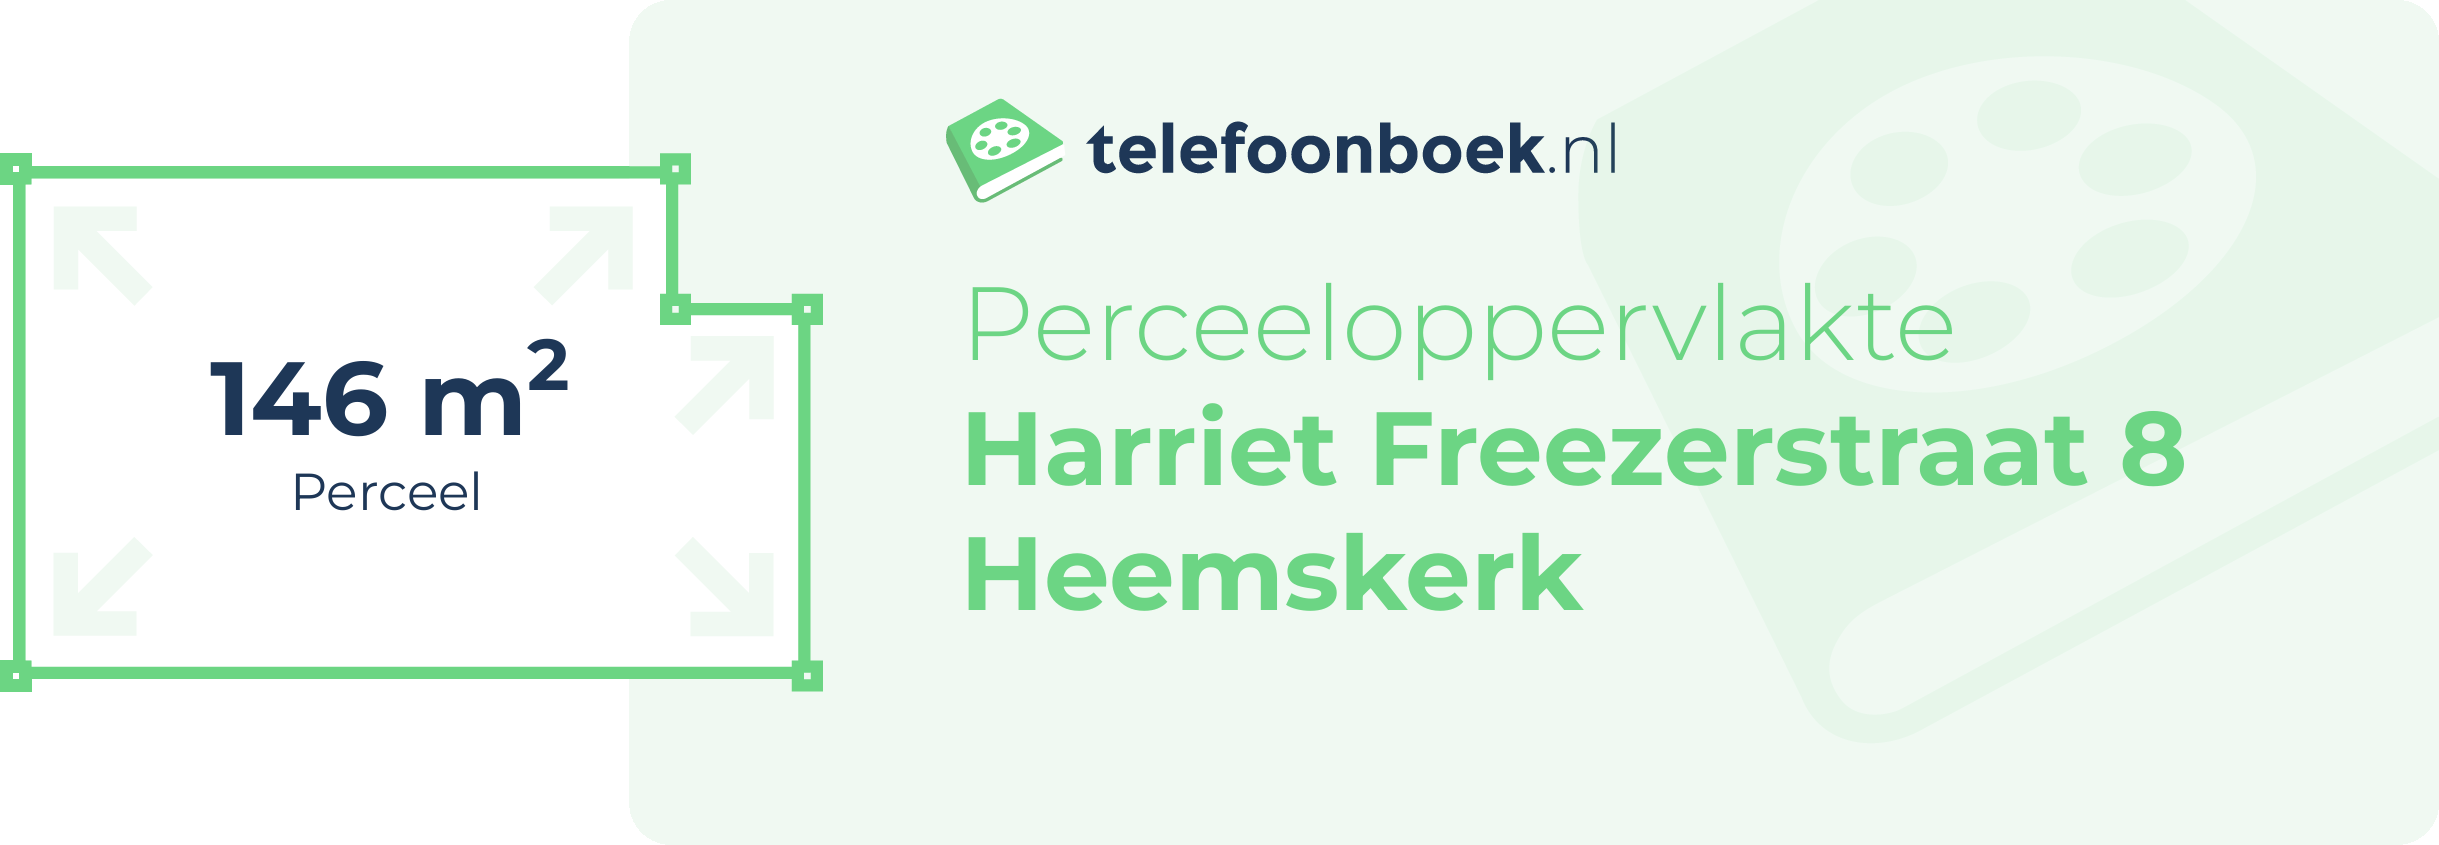 Perceeloppervlakte Harriet Freezerstraat 8 Heemskerk